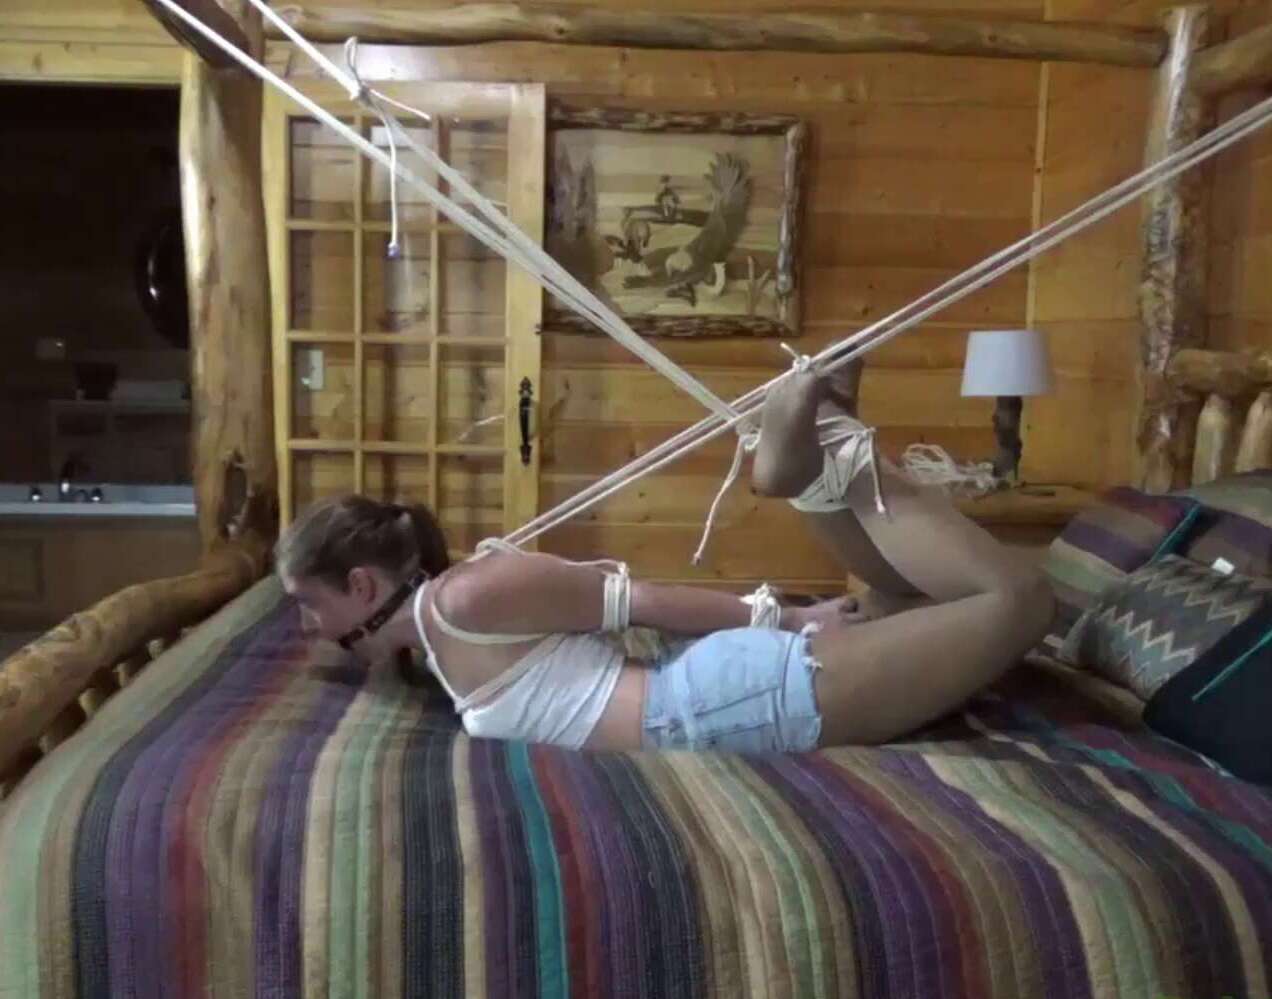 Rachel Adams Brutal Hogtie on the Bed - Rope Bondage